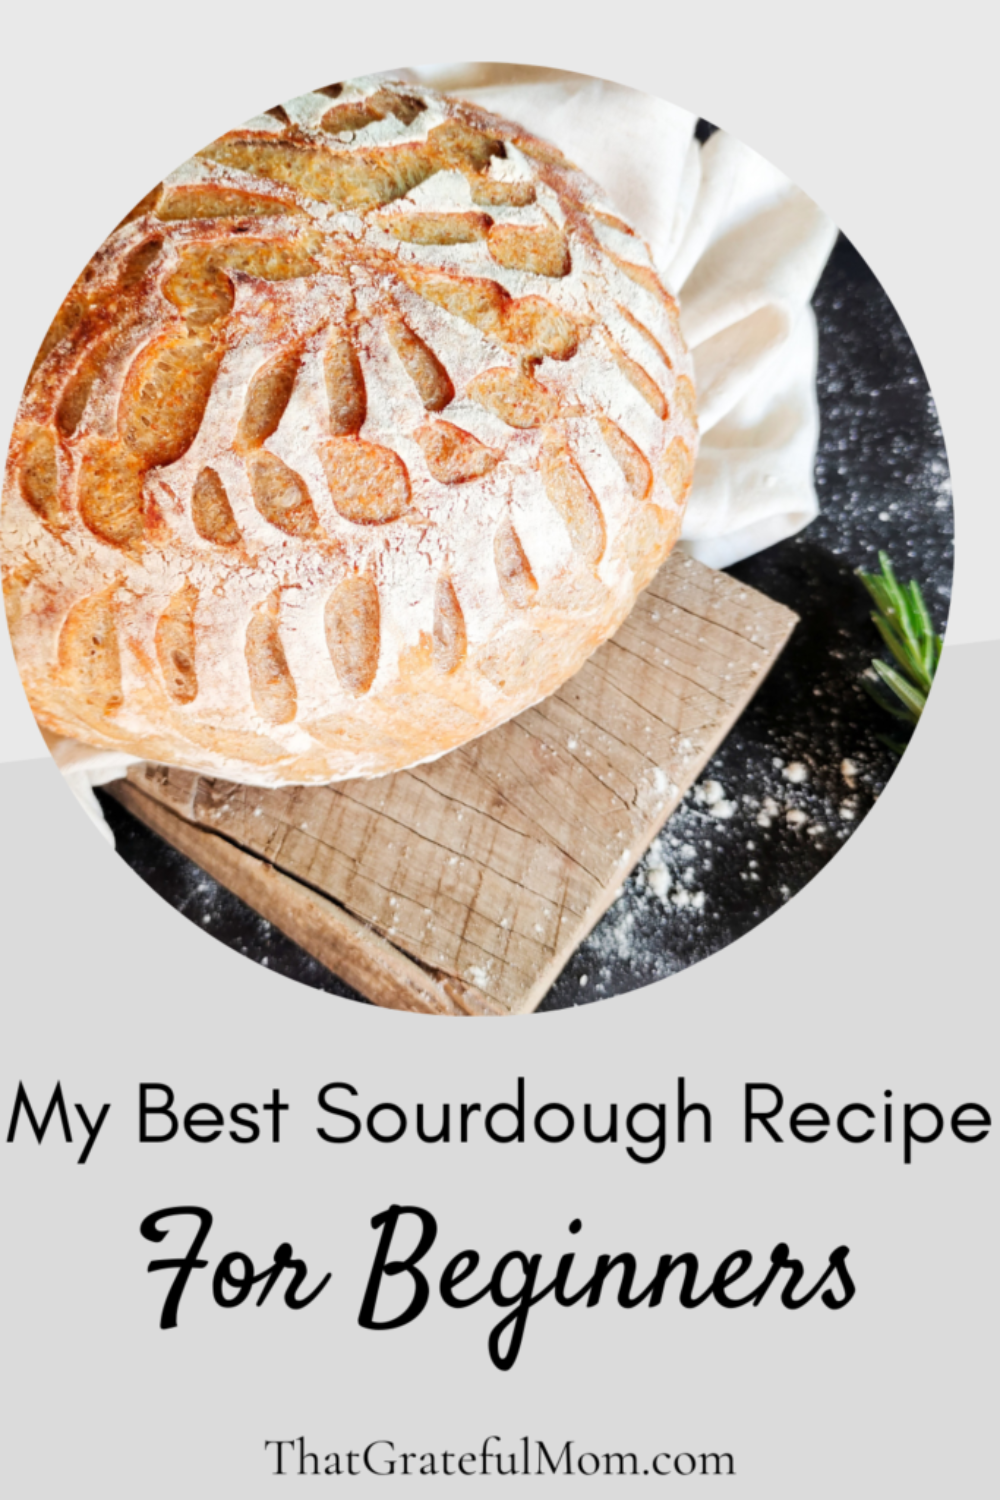 My Best Sourdough Recipe pin 2